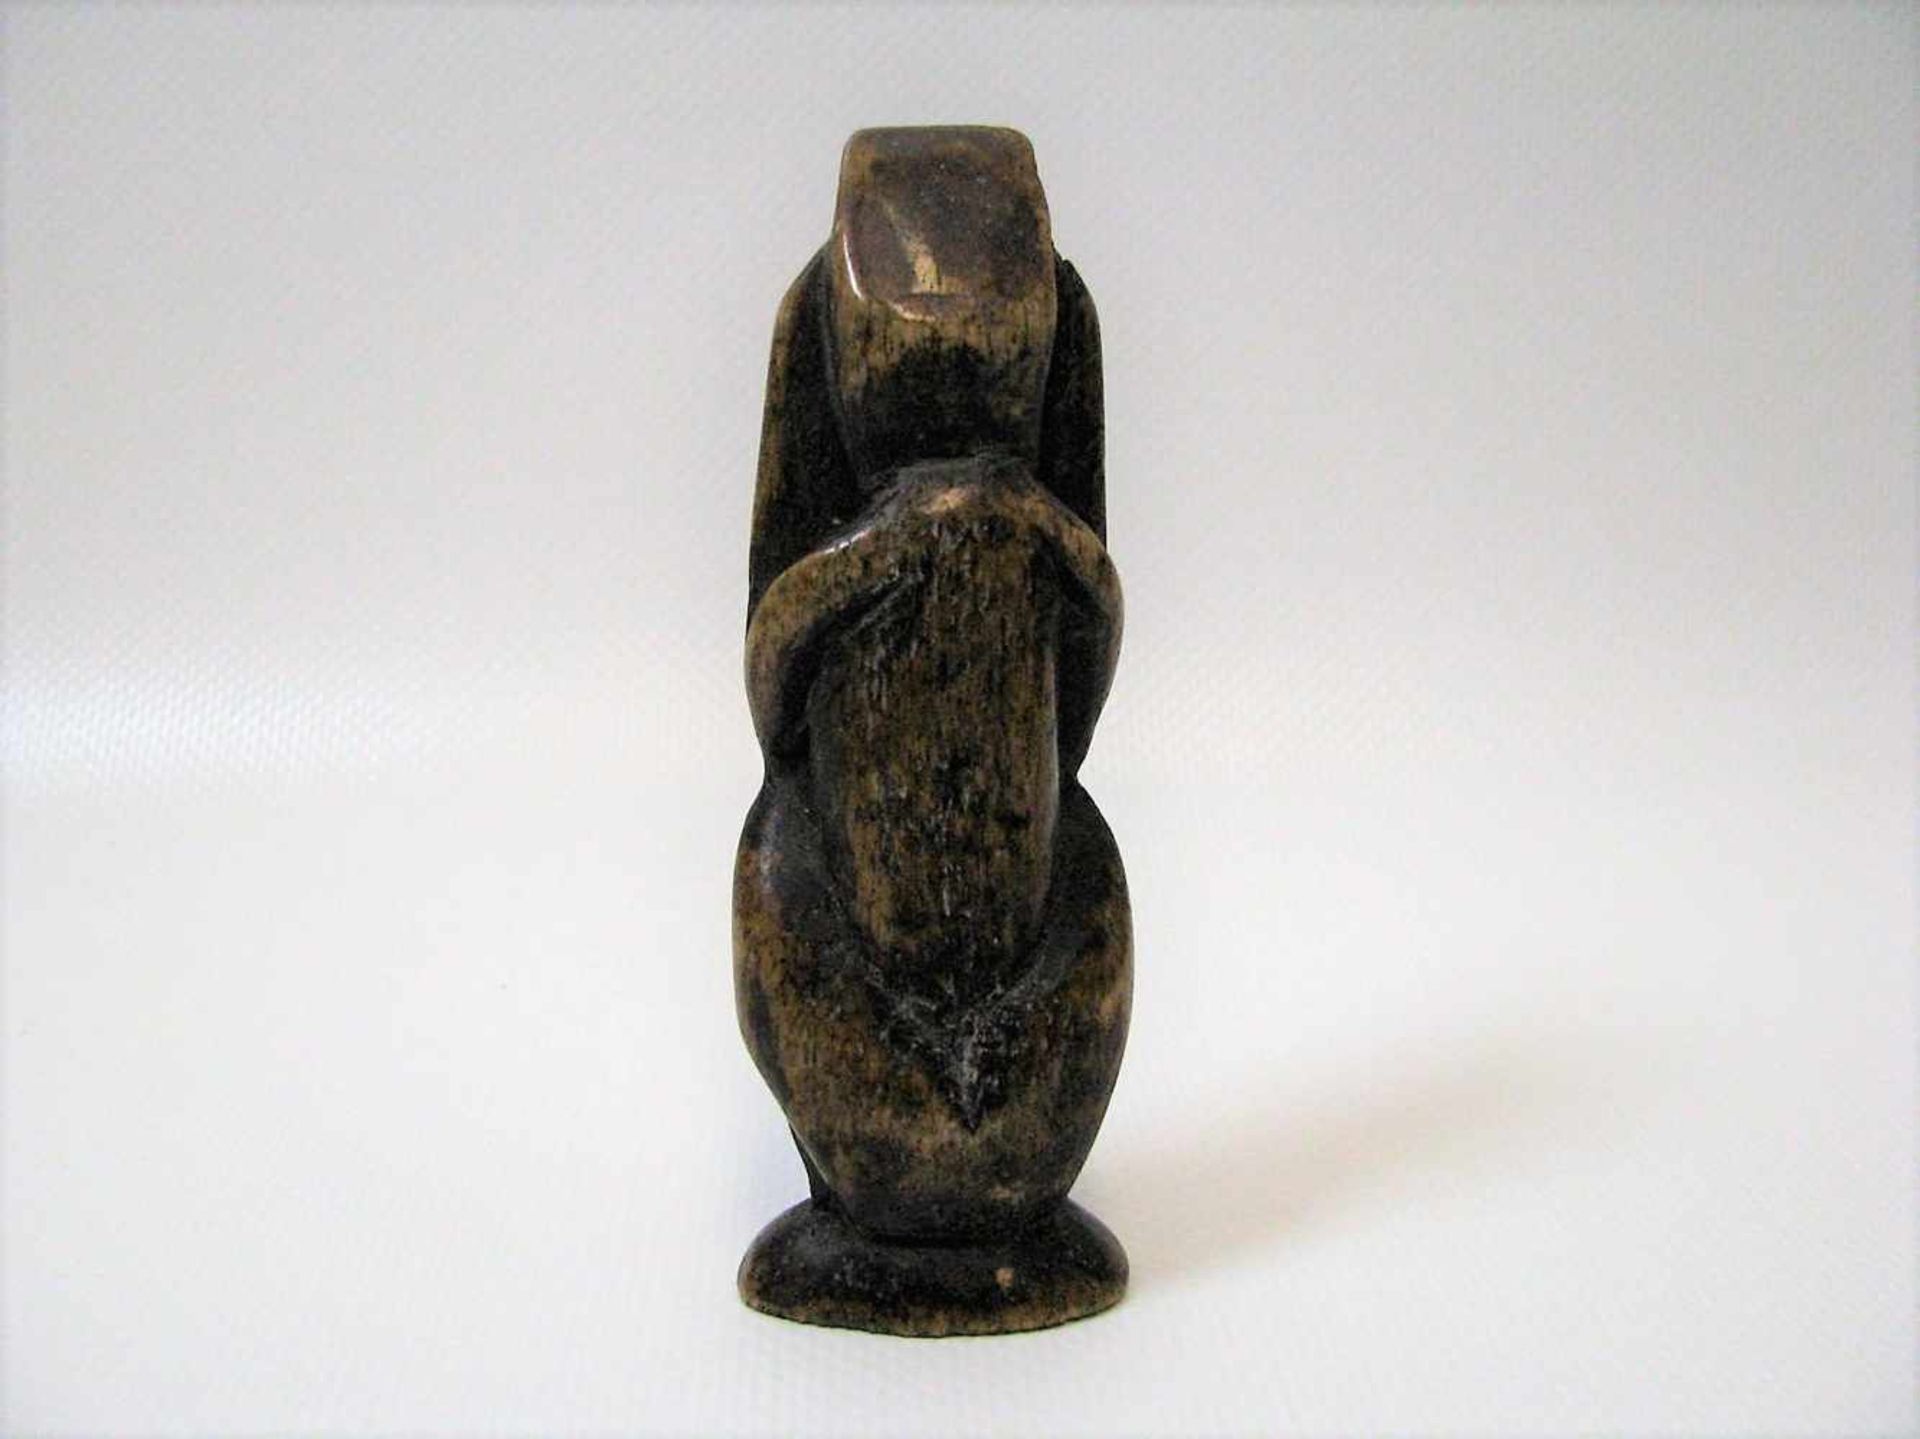 Hockender, antik, Bein beschnitzt, 10 x 3,5 x 2 cm. - Bild 2 aus 2